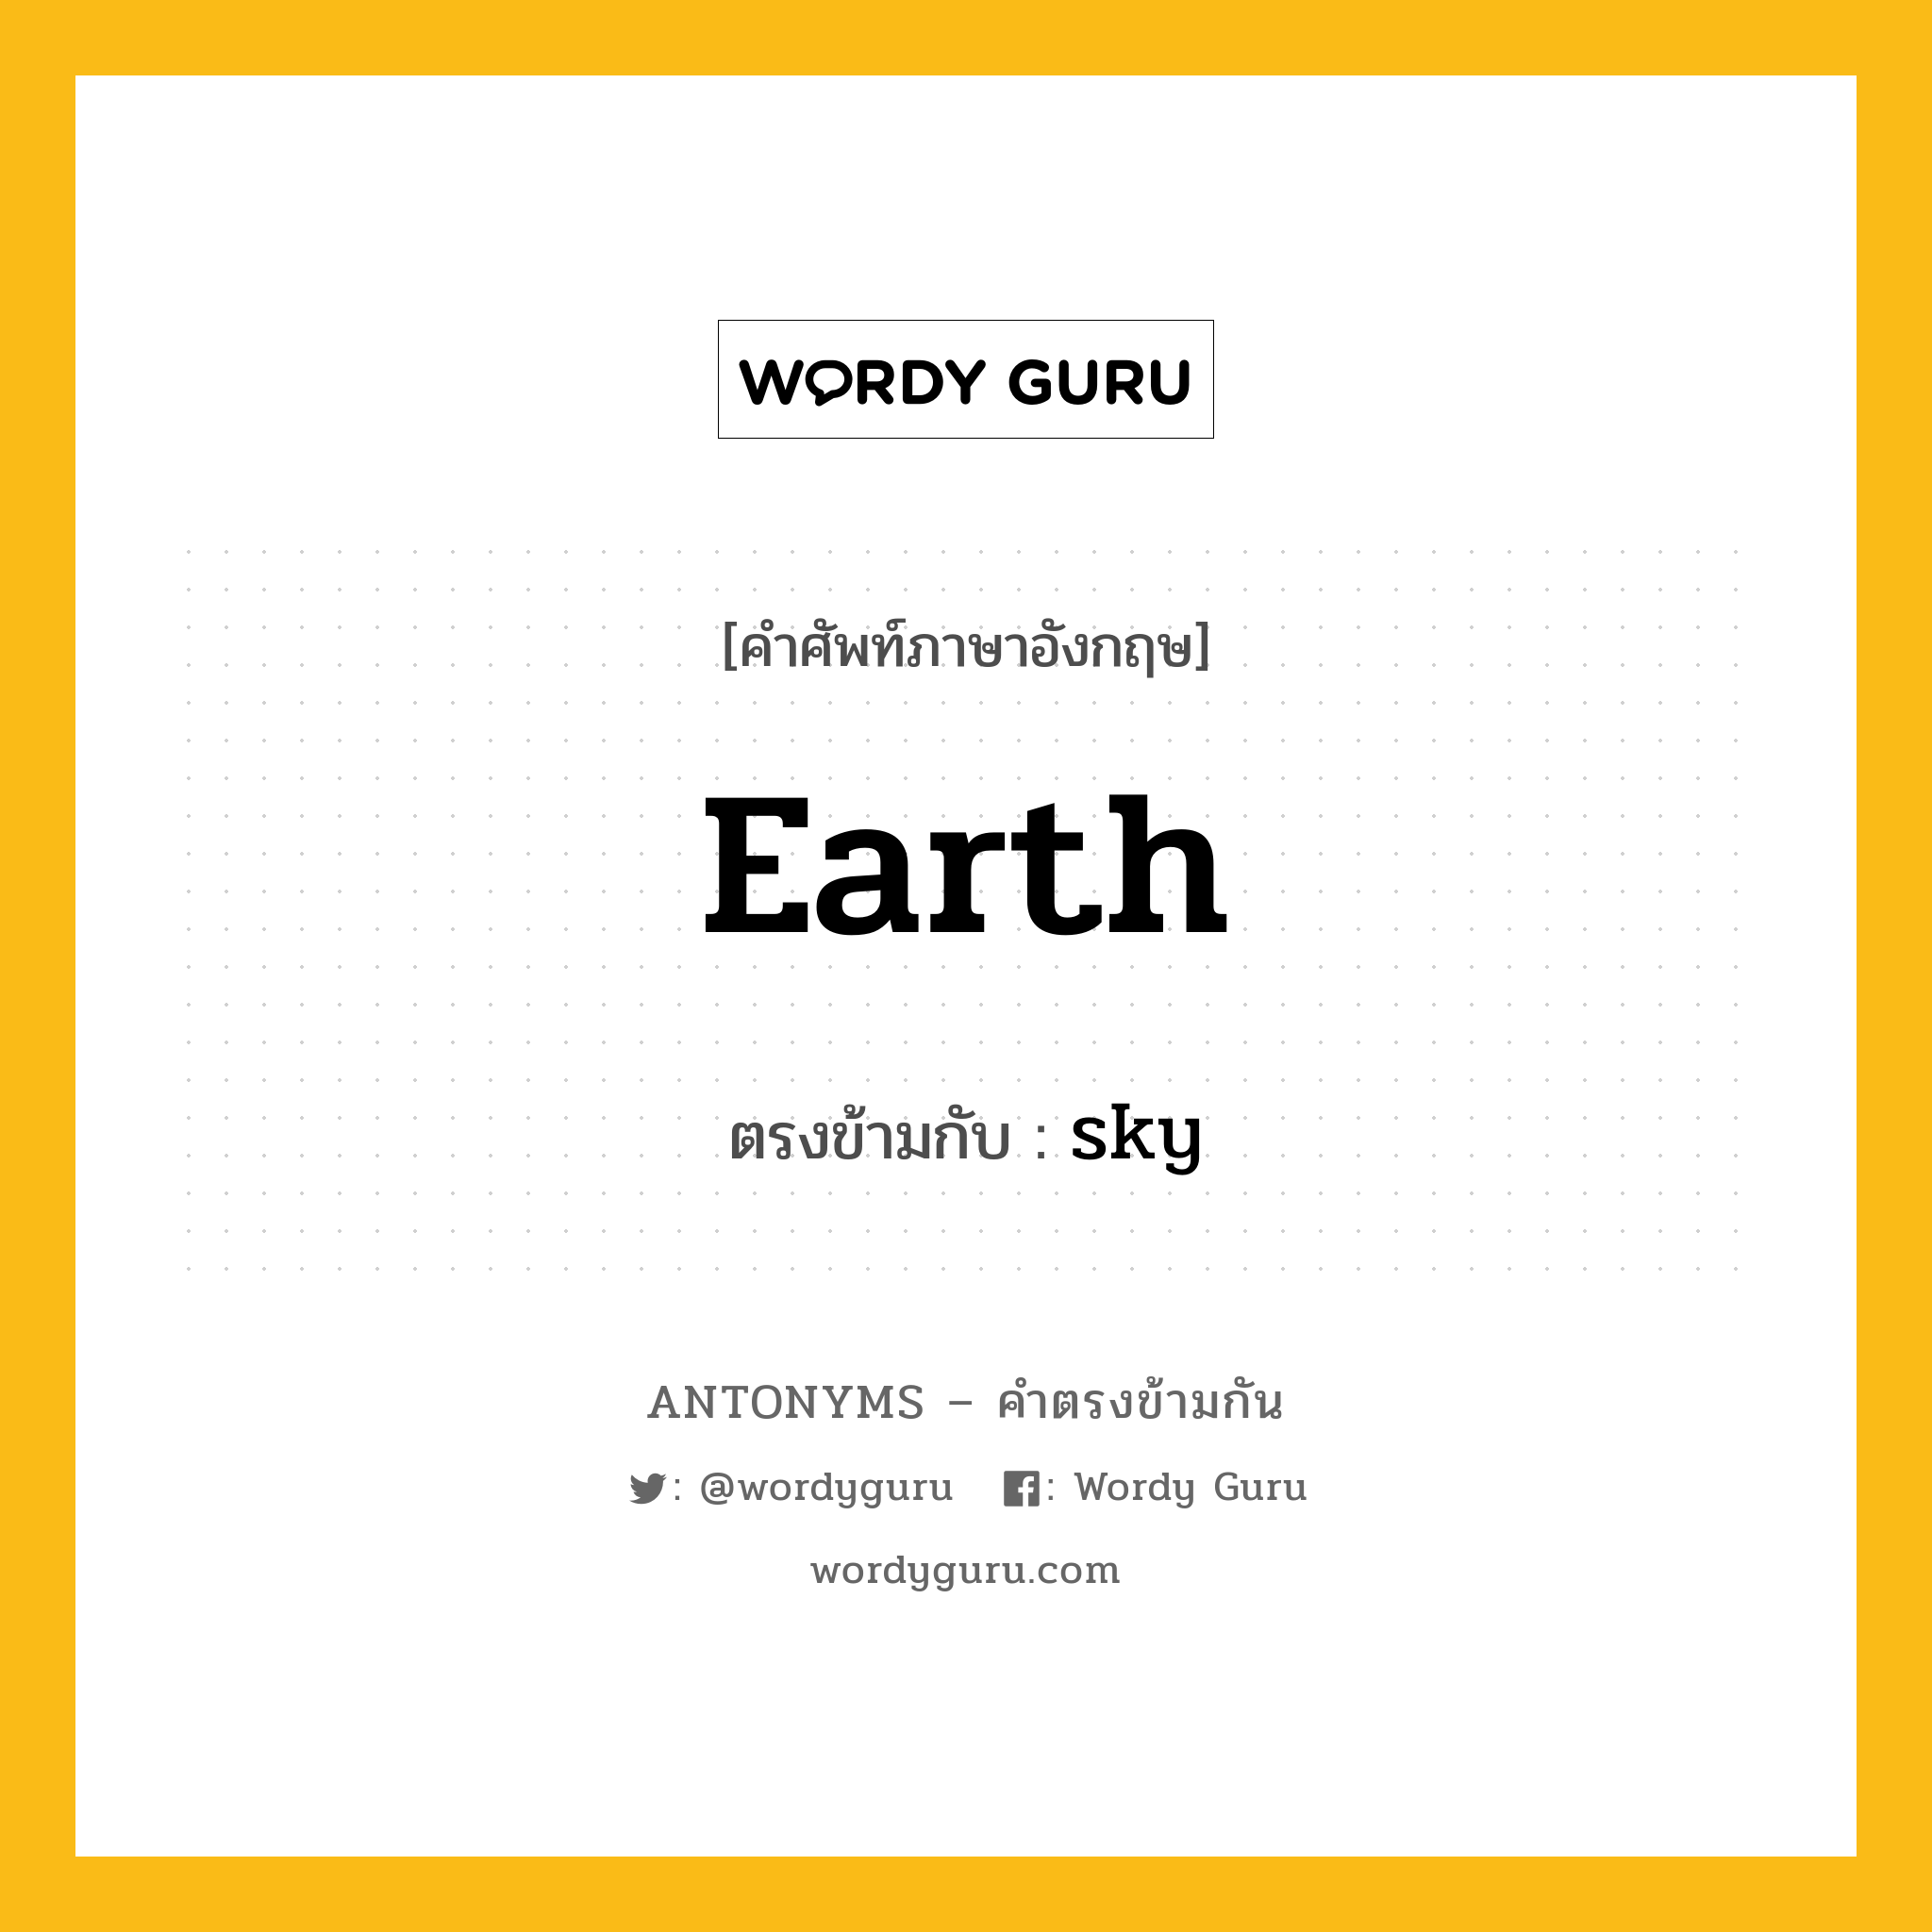 earth เป็นคำตรงข้ามกับคำไหนบ้าง?, คำศัพท์ภาษาอังกฤษ earth ตรงข้ามกับ sky หมวด sky